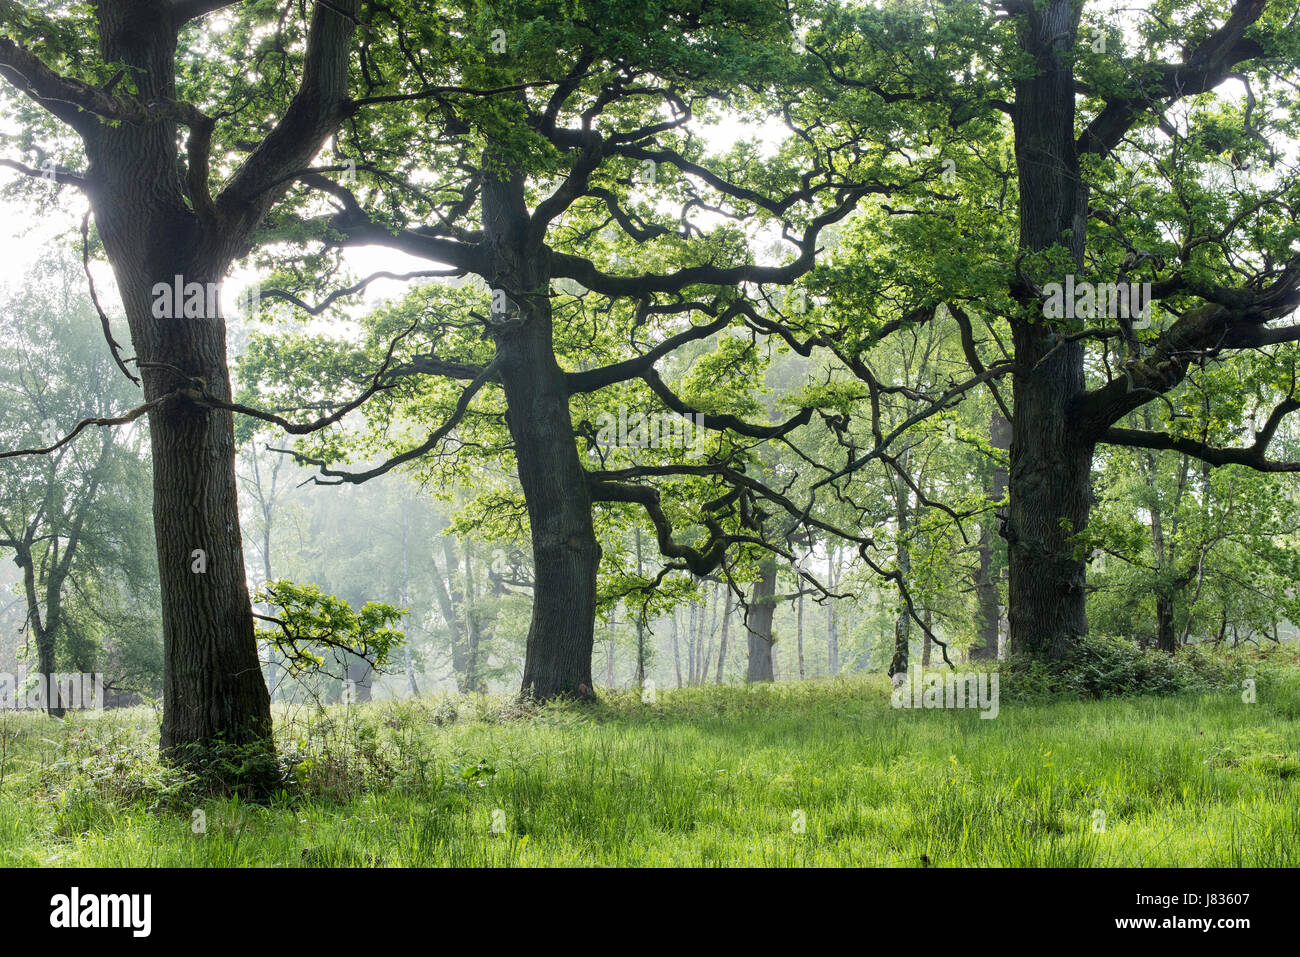 Misty robles en una versión en inglés de madera. Oxfordshire, Inglaterra Foto de stock